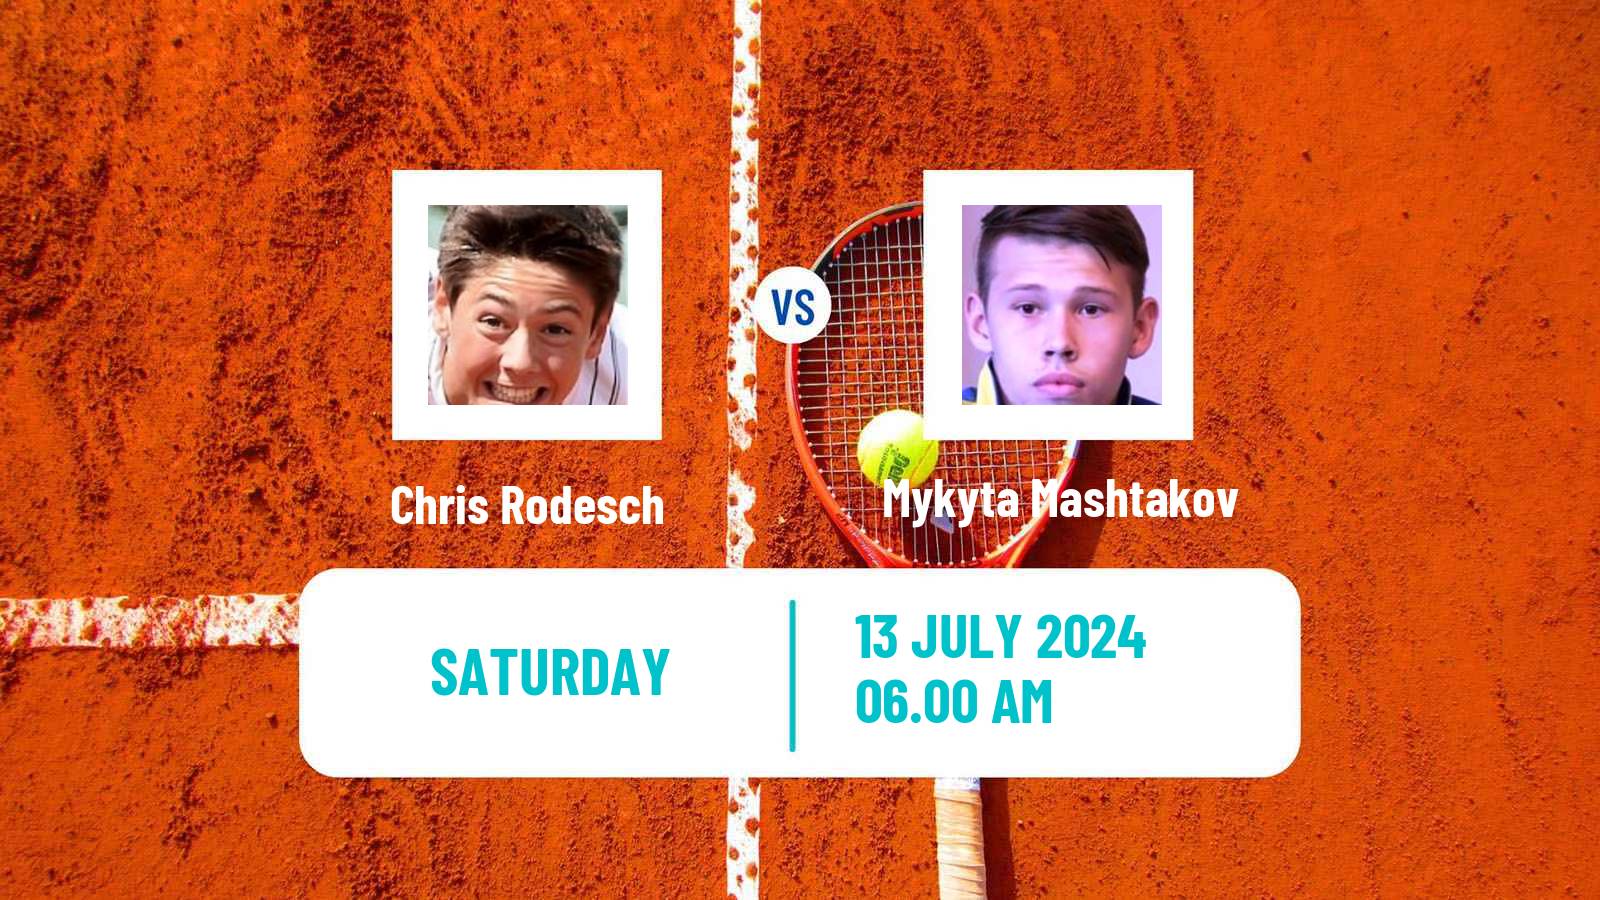 Tennis ITF M15 Lodz Men Chris Rodesch - Mykyta Mashtakov